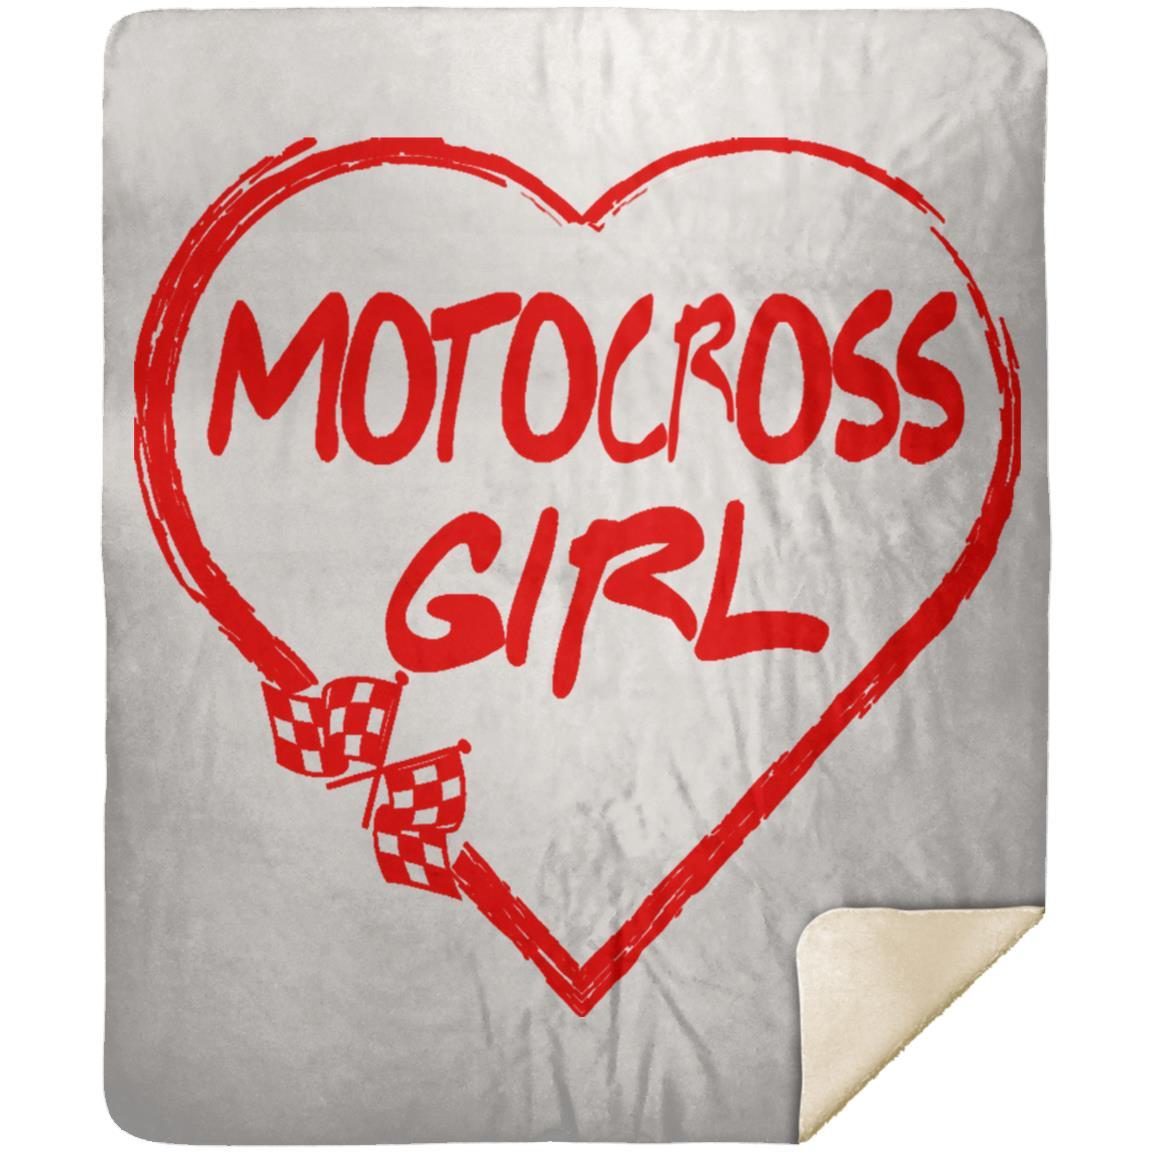 Motocross Girl Heart Premium Mink Sherpa Blanket 50x60